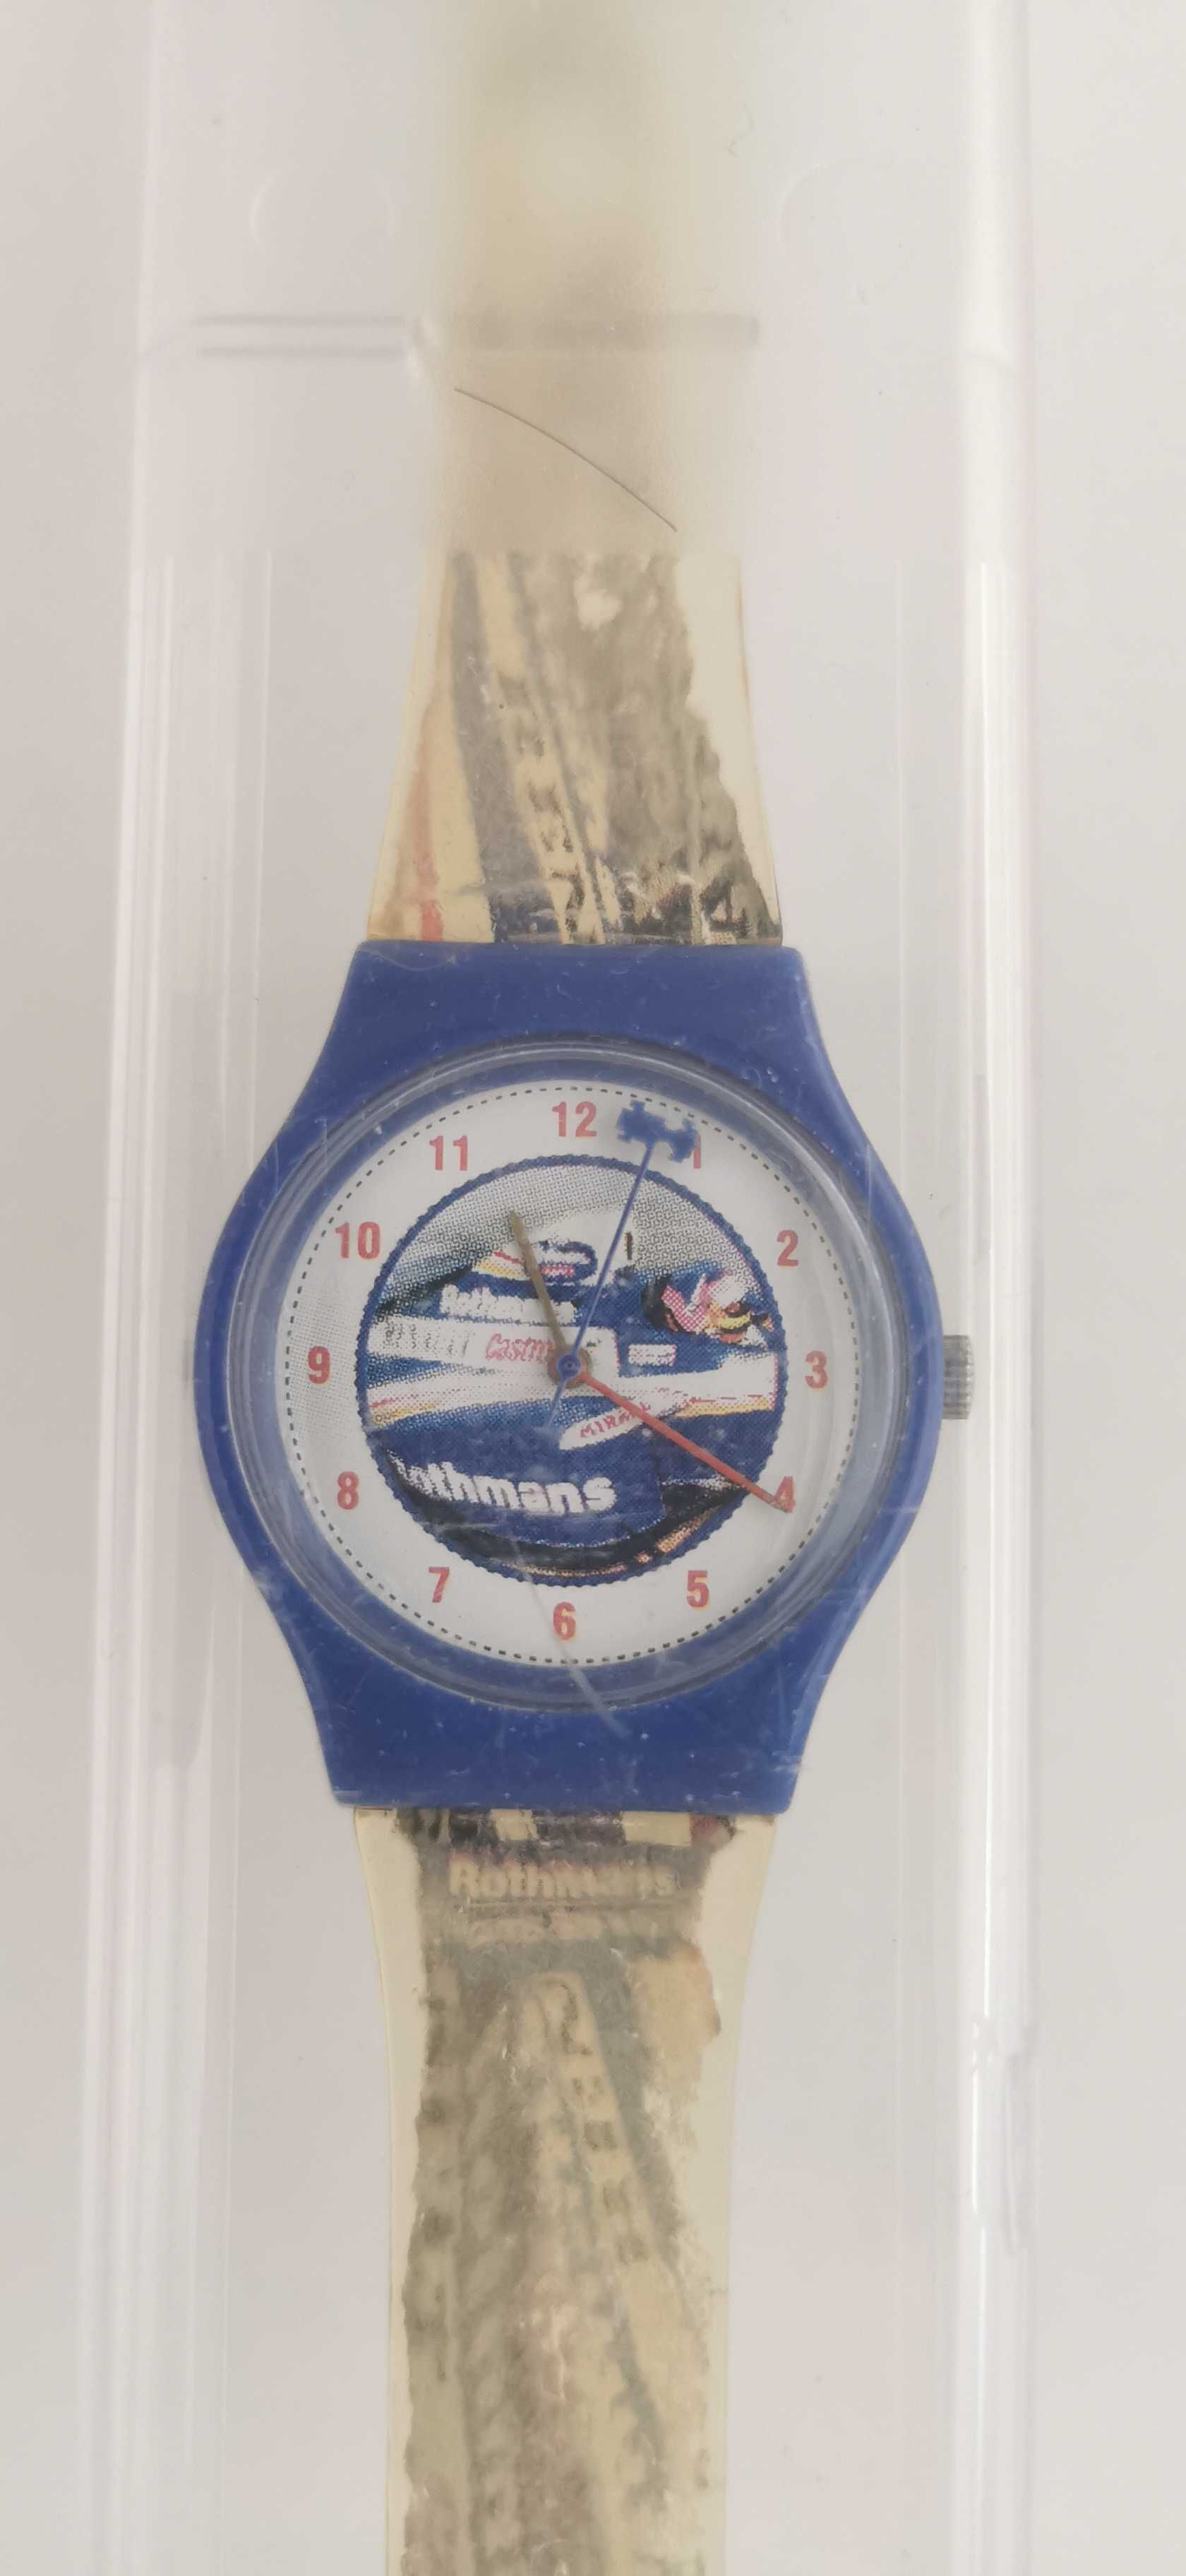 Relógio com publicidade Rothmans F1